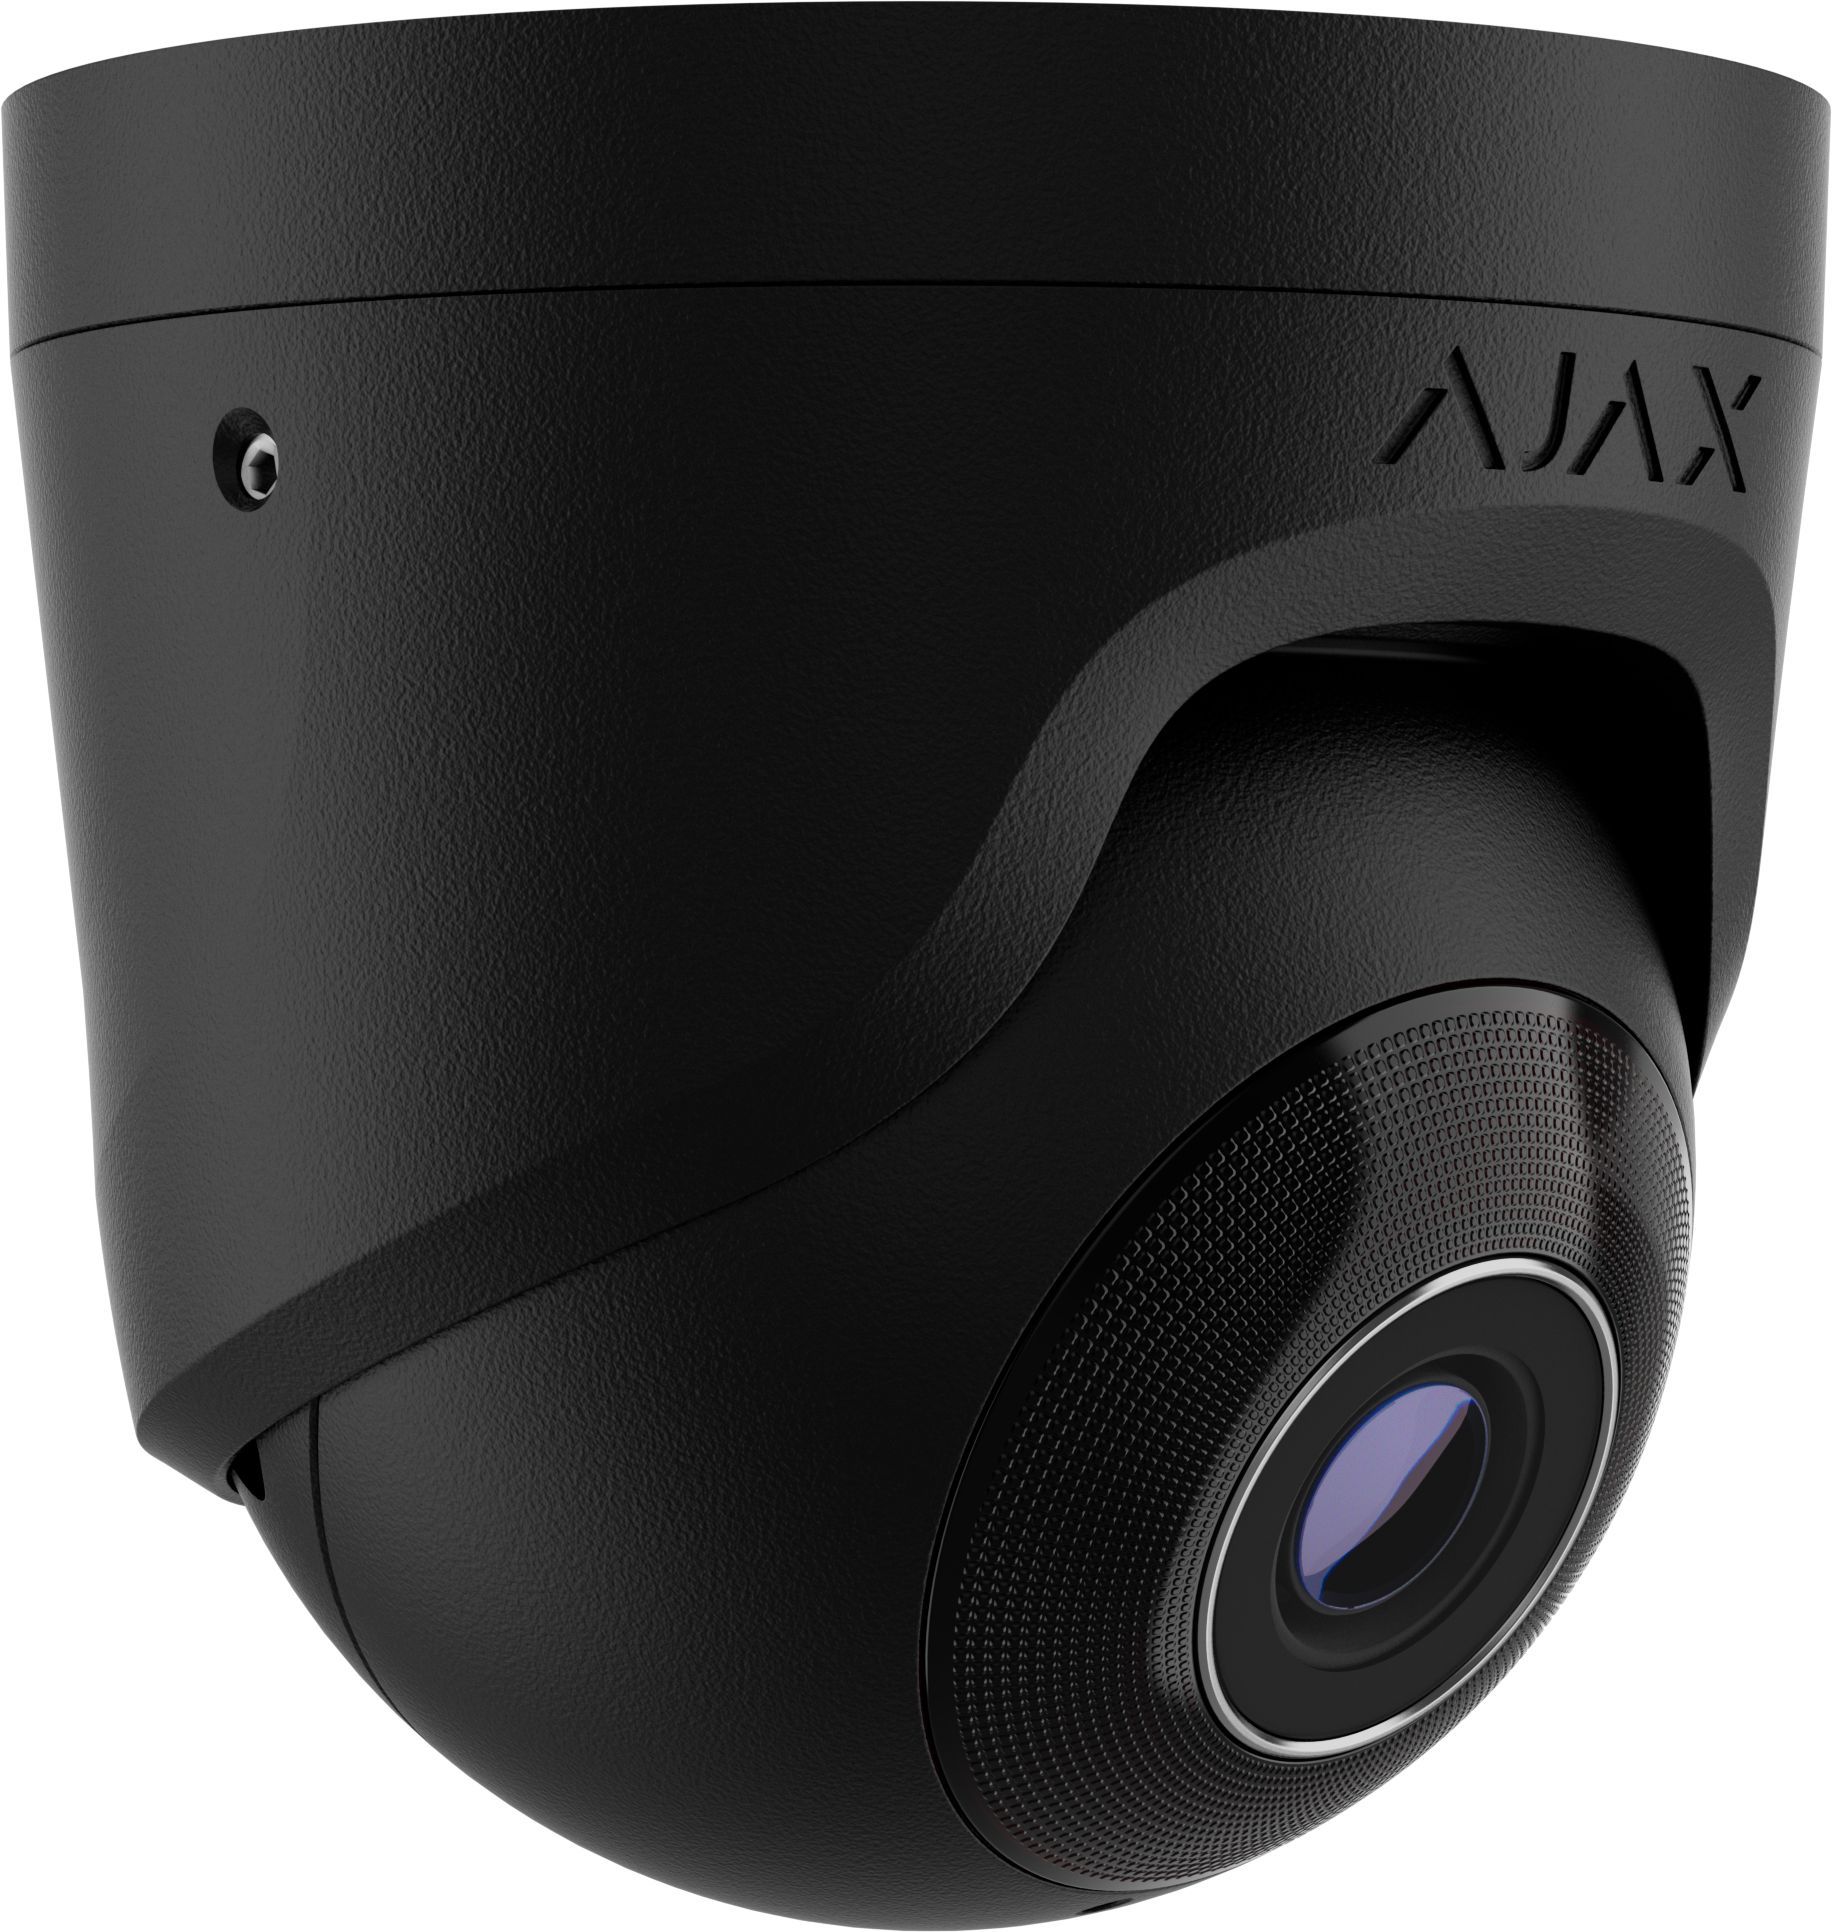 AJAX - TurretCam (8MP/2.8 mm) | Digital Key World